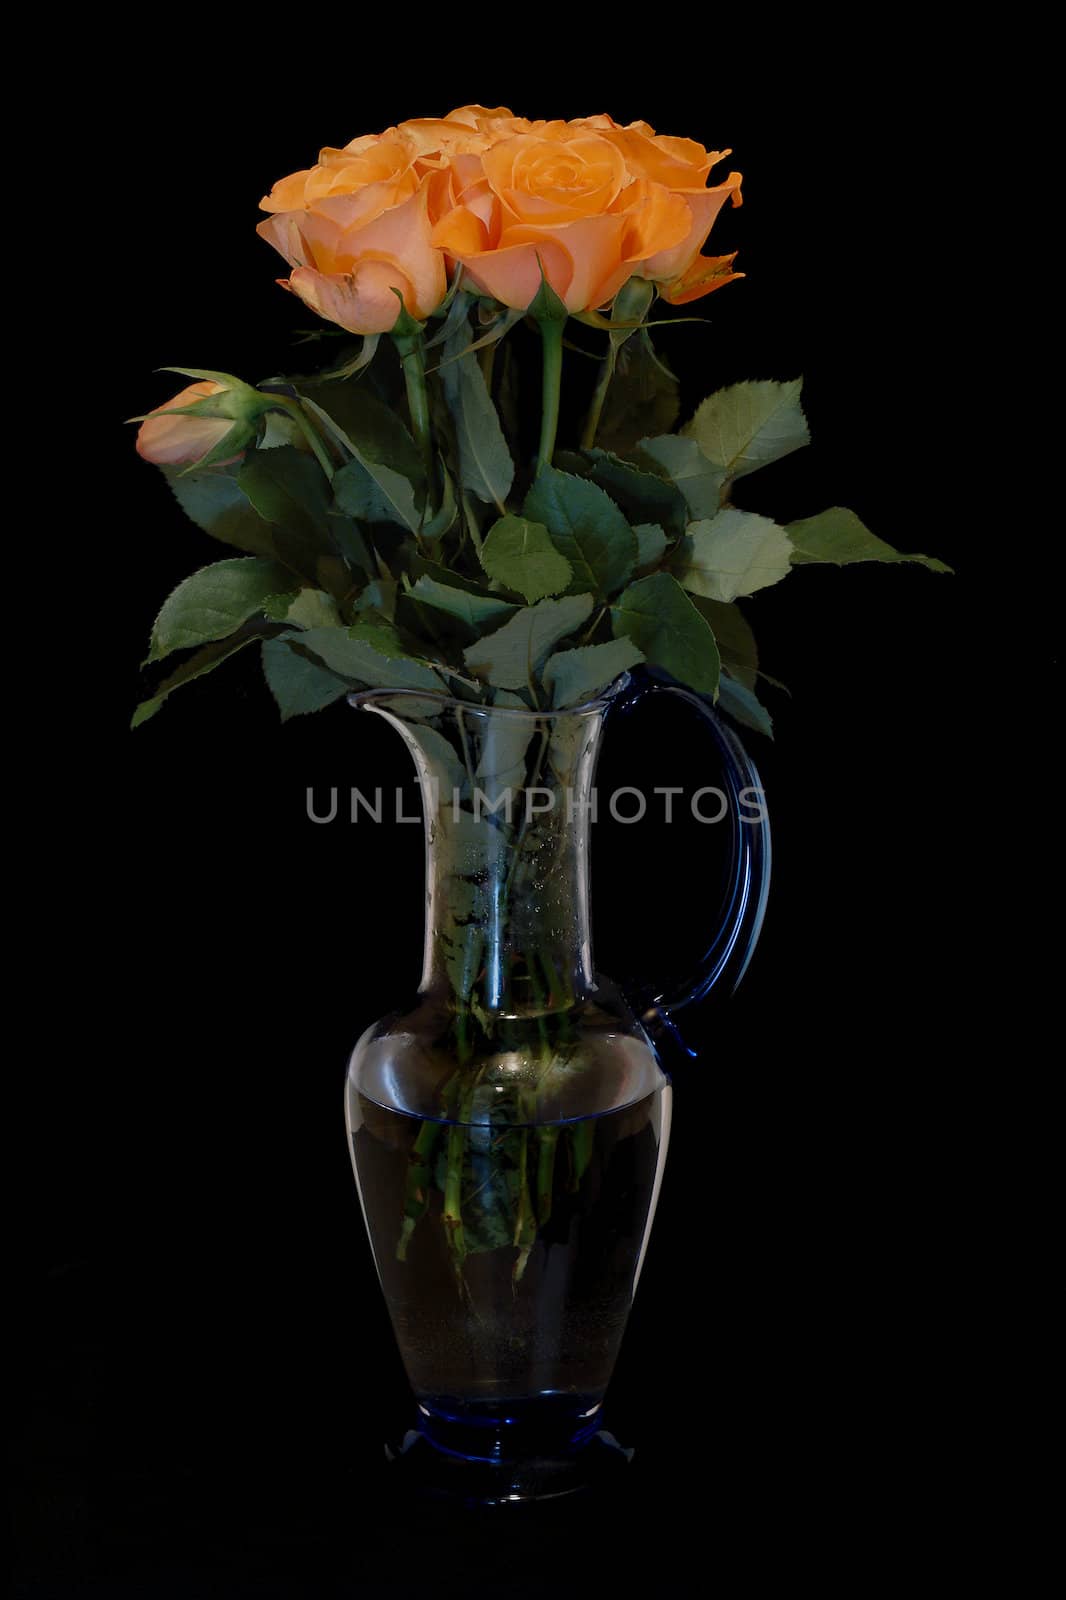 Orange roses in a vase against a black background